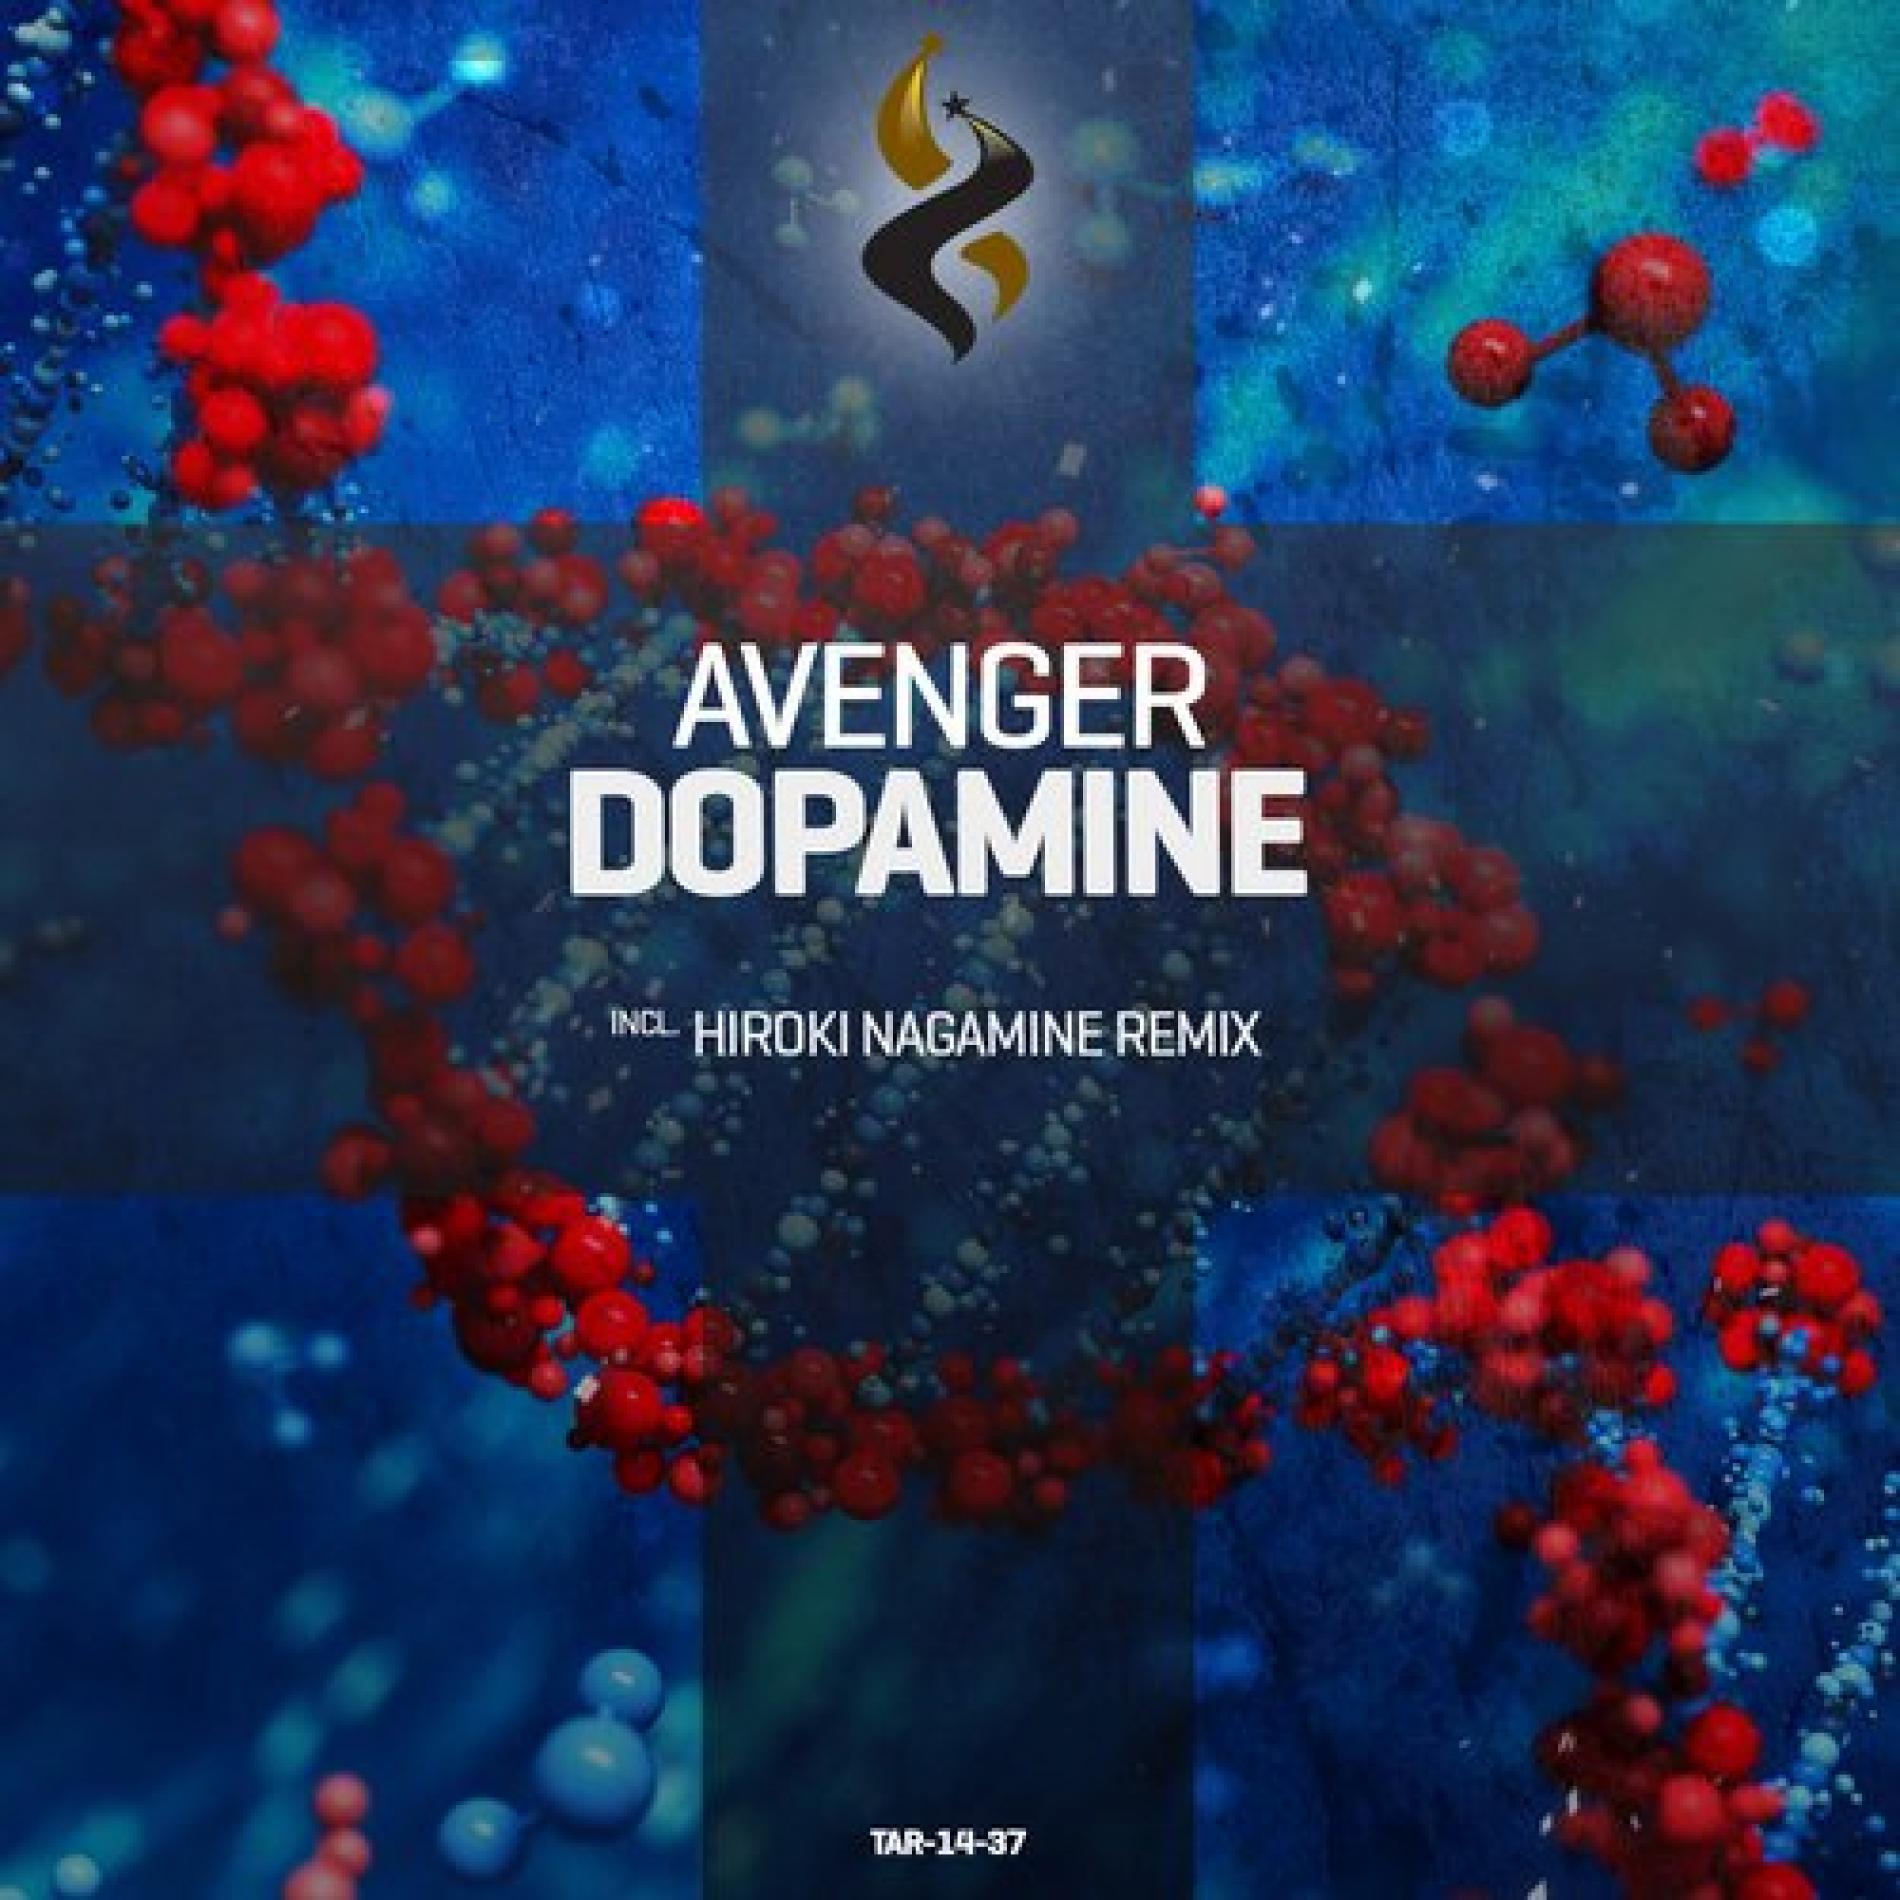 Avenger: Dopamine – Now Out On Beatport